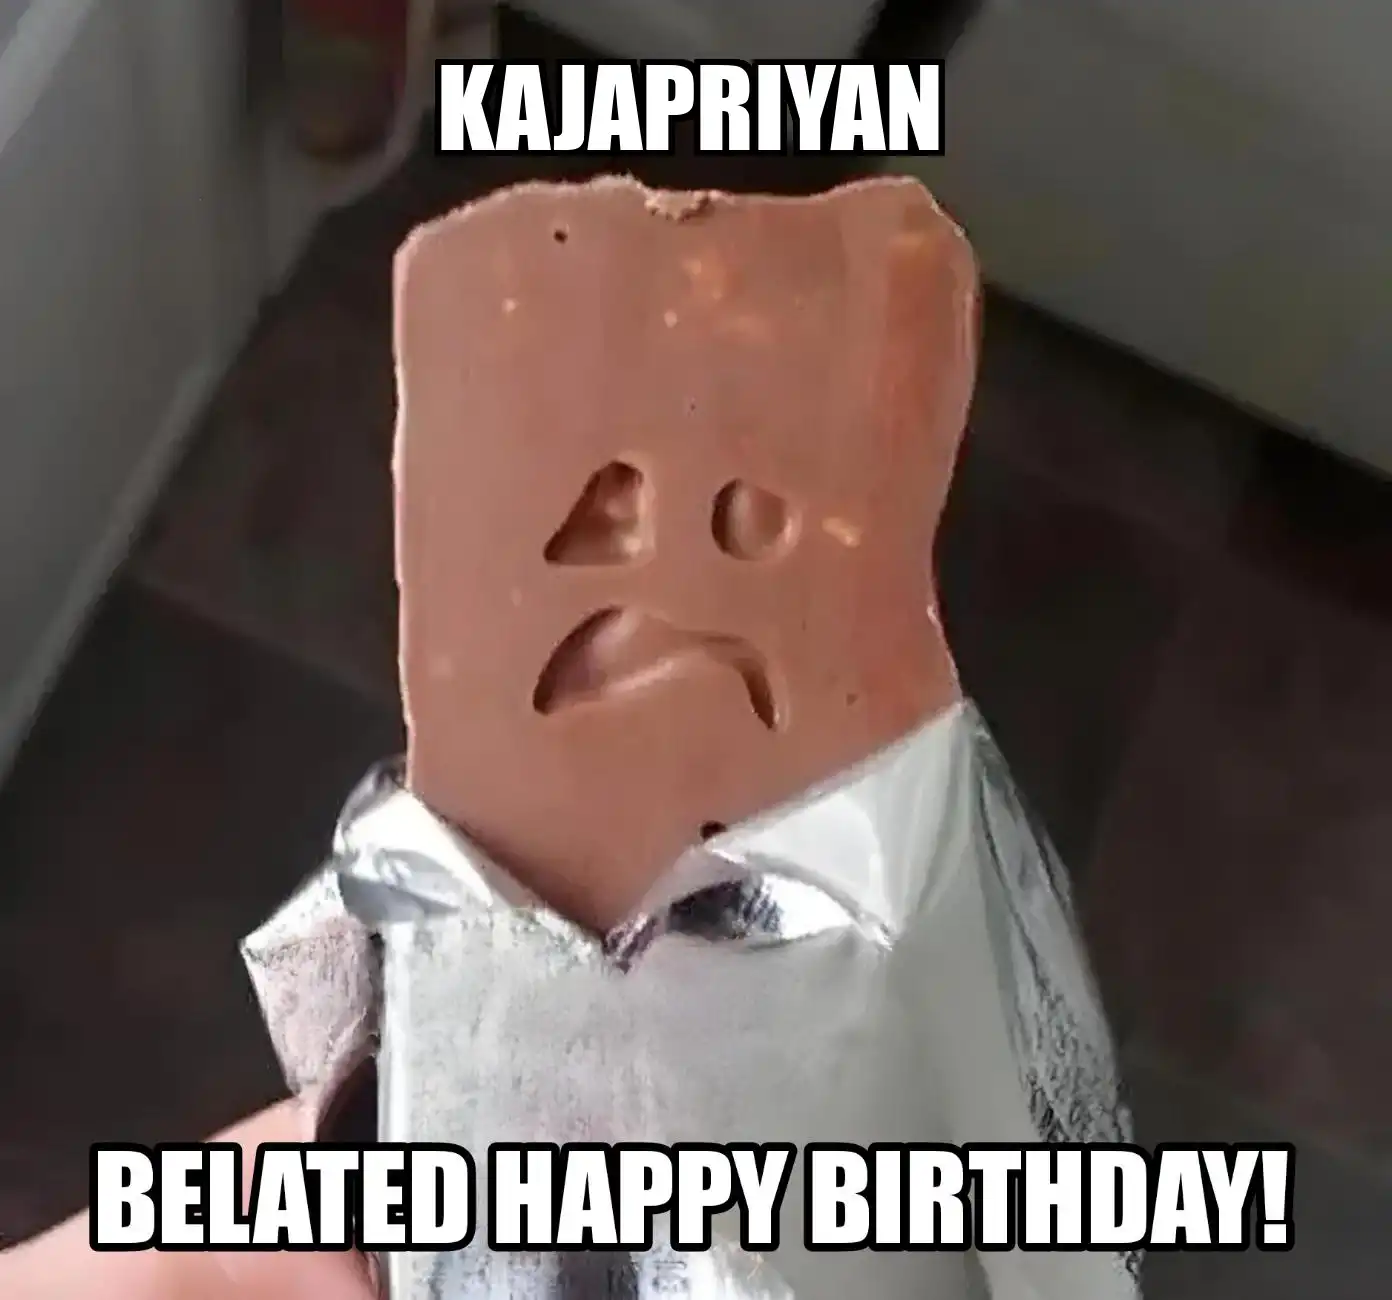 Happy Birthday Kajapriyan Belated Happy Birthday Meme